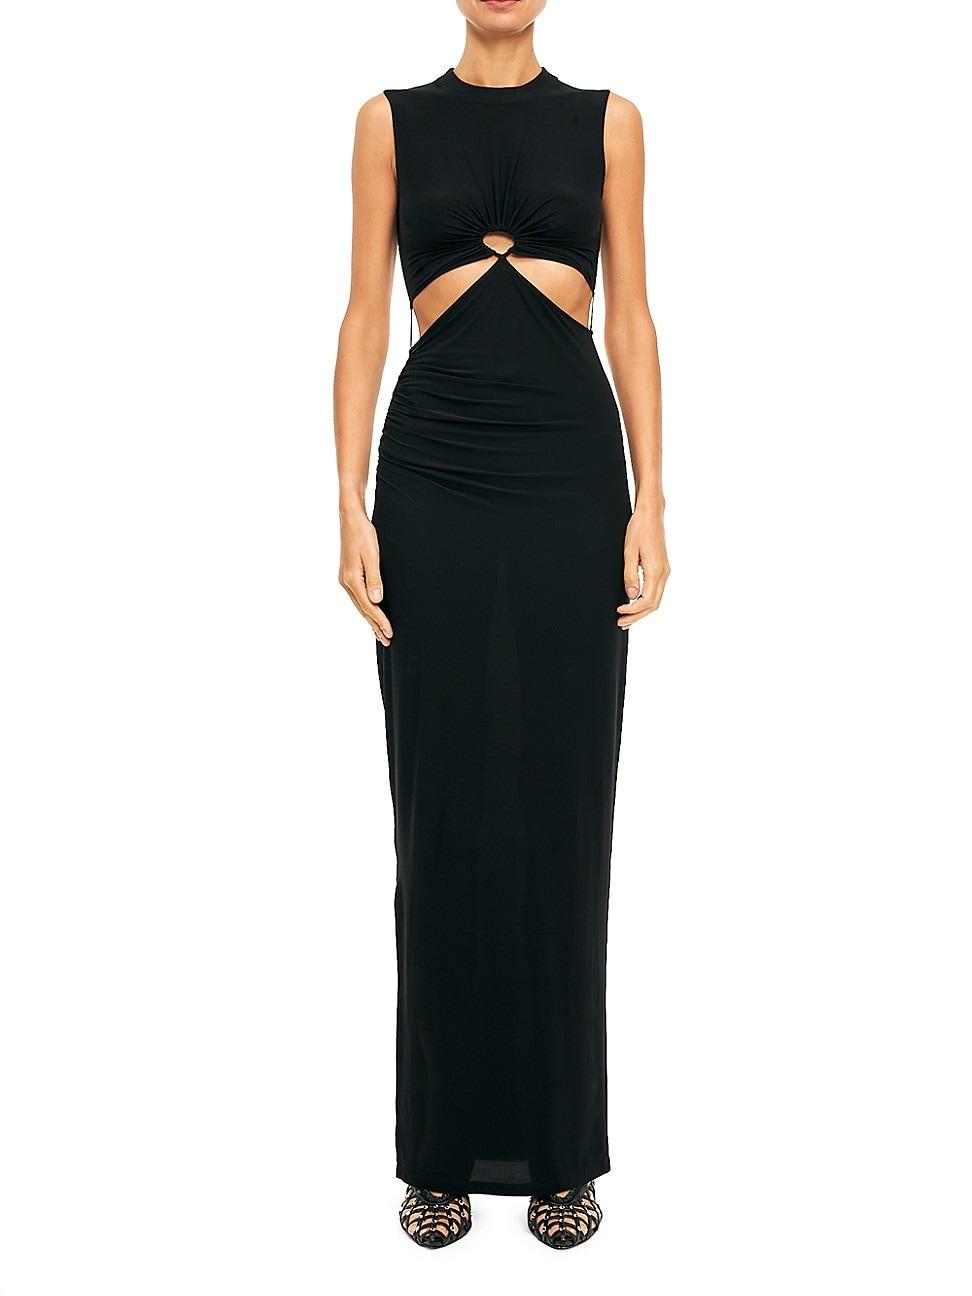 Nensi Dojaka Cut-out Maxi Dress in Black | Lyst